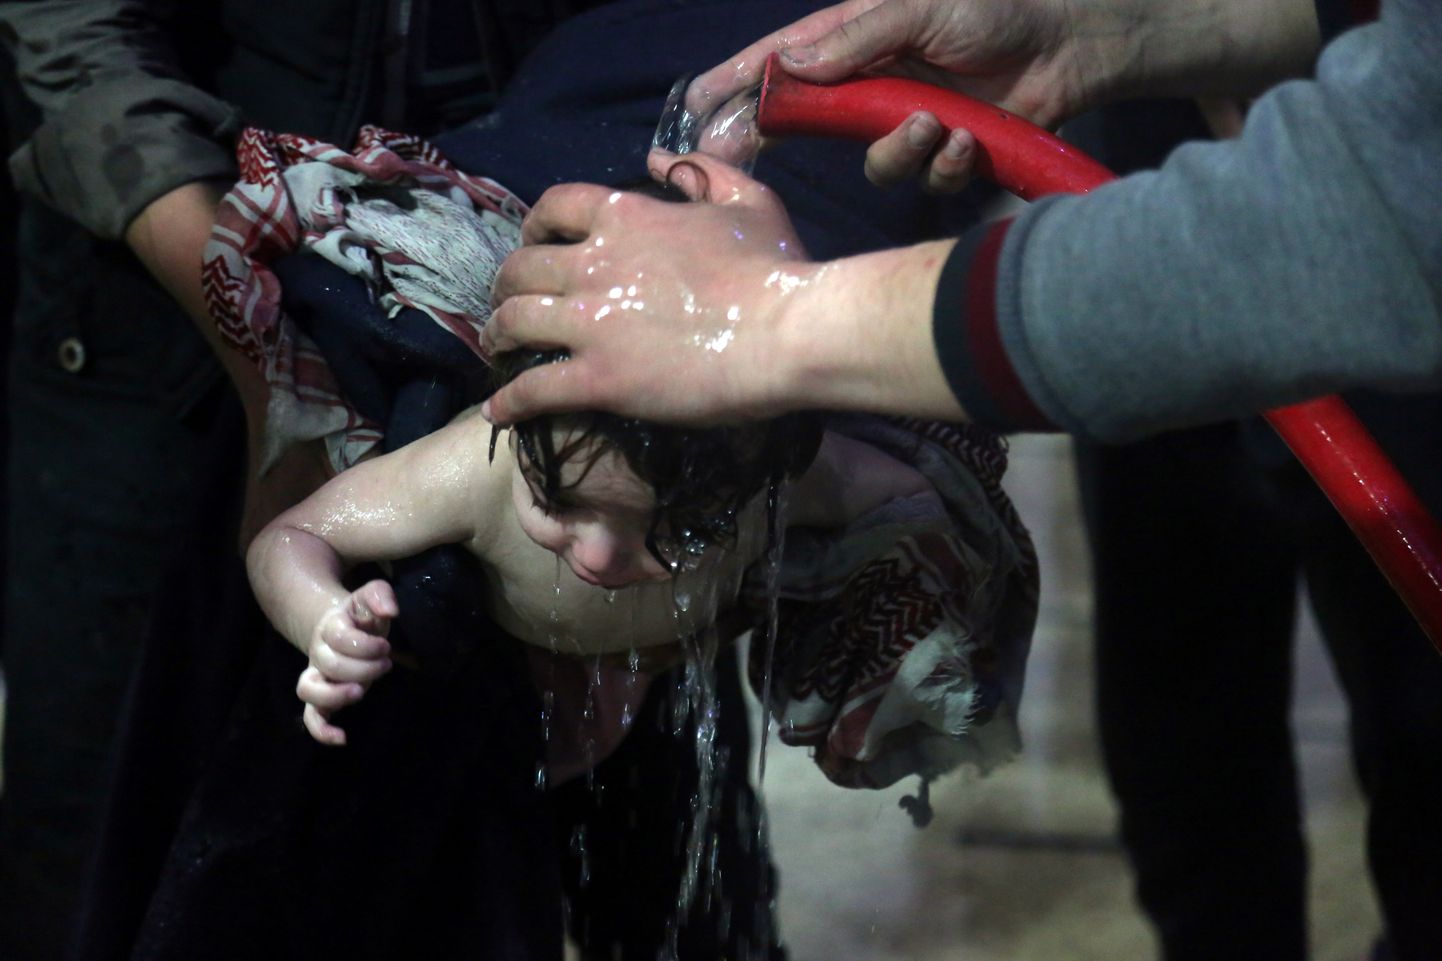 Laps Douma linnas arvatava keemiarünnaku järel humanitaartöötajatelt abi saamas.